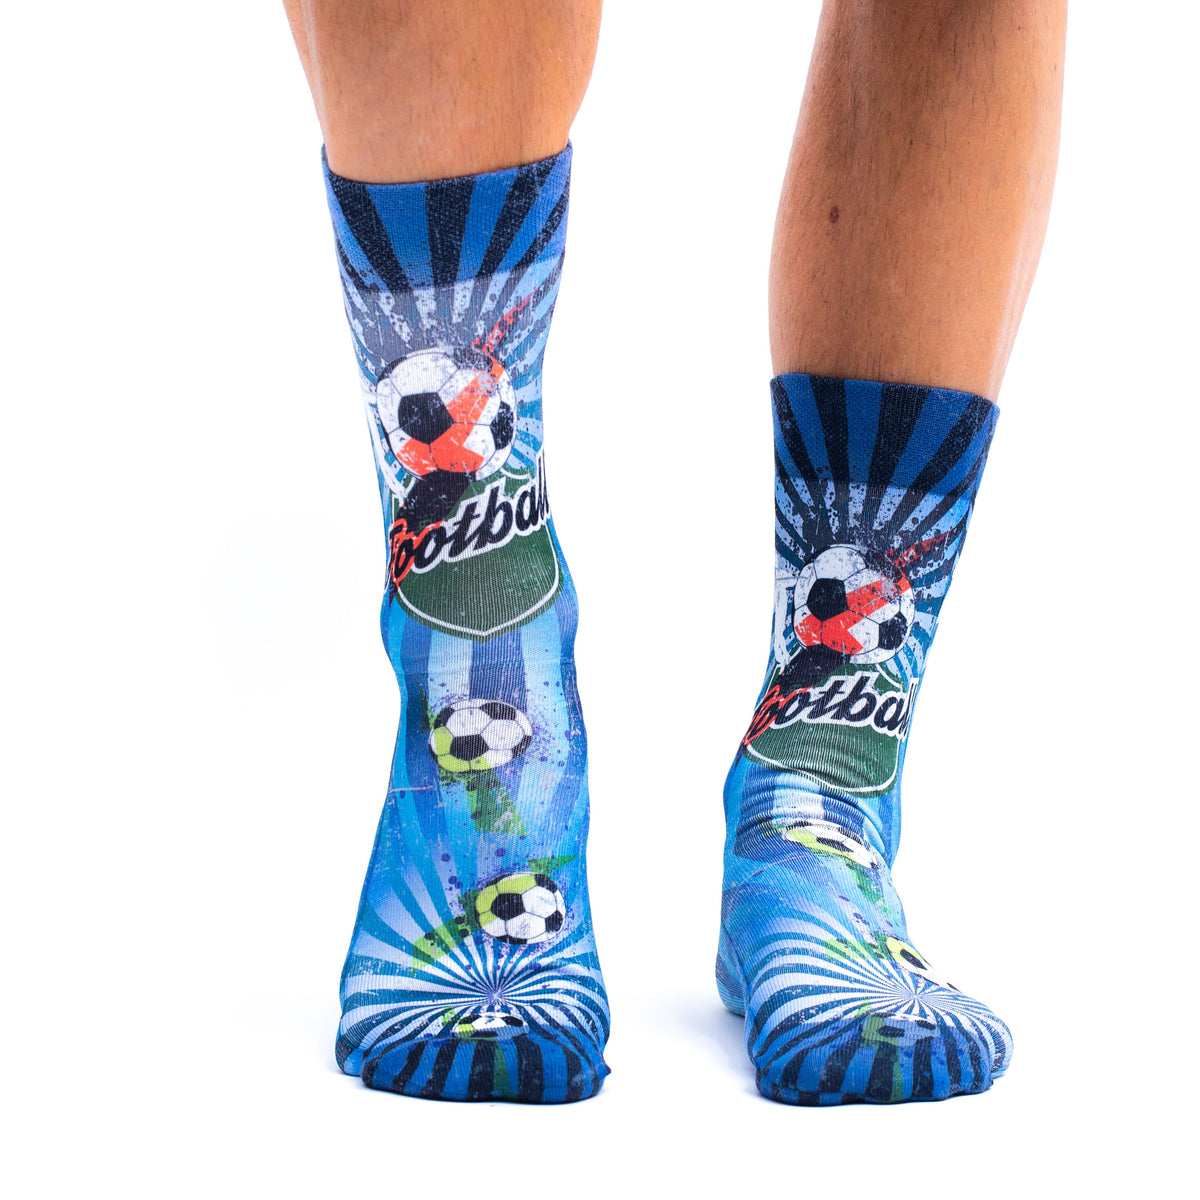 Goal Printed Mens Socks